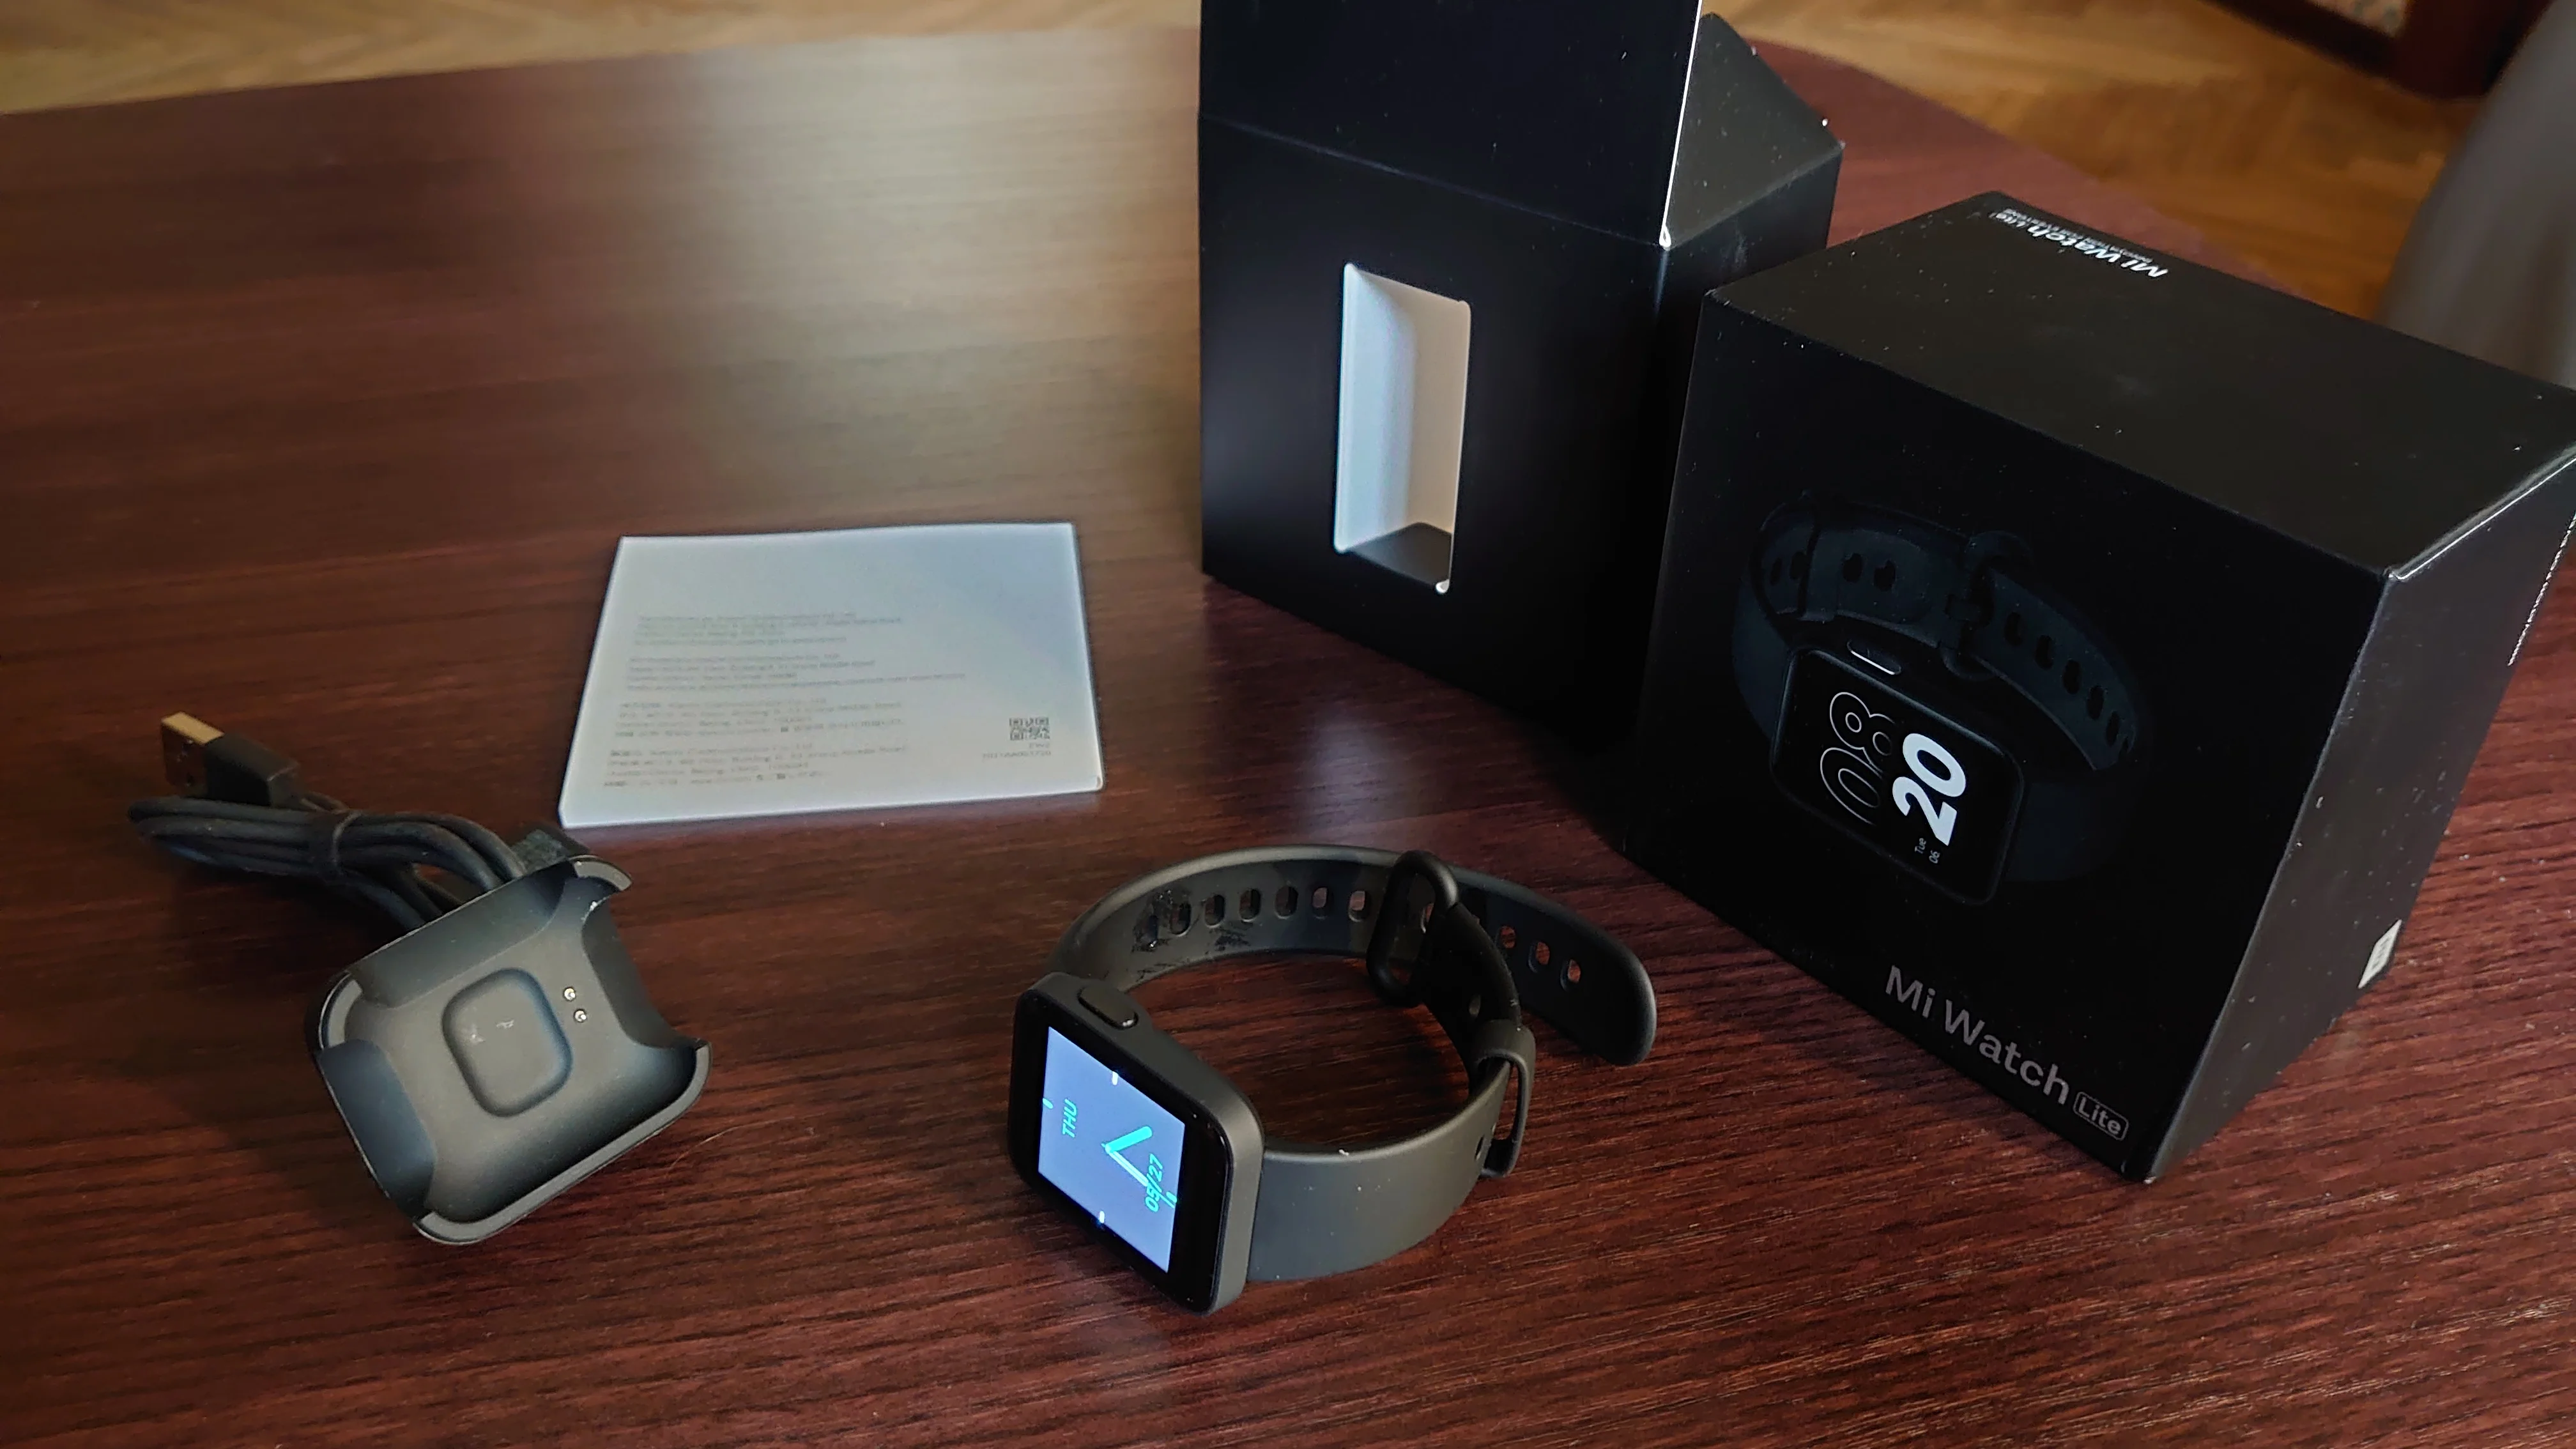 Весной 2021 года Xiaomi выпустила Mi Watch Lite — странные «умные» часы с ограниченными возможностями и спорным ценником. Новинка рассчитана на тех, кто просто хочет быть просто в теме и носить на руке «напоминалку» с большим экраном и без каких-либо серьезных измерений. Ниже разбираем возможности новинки и ее актуальность.